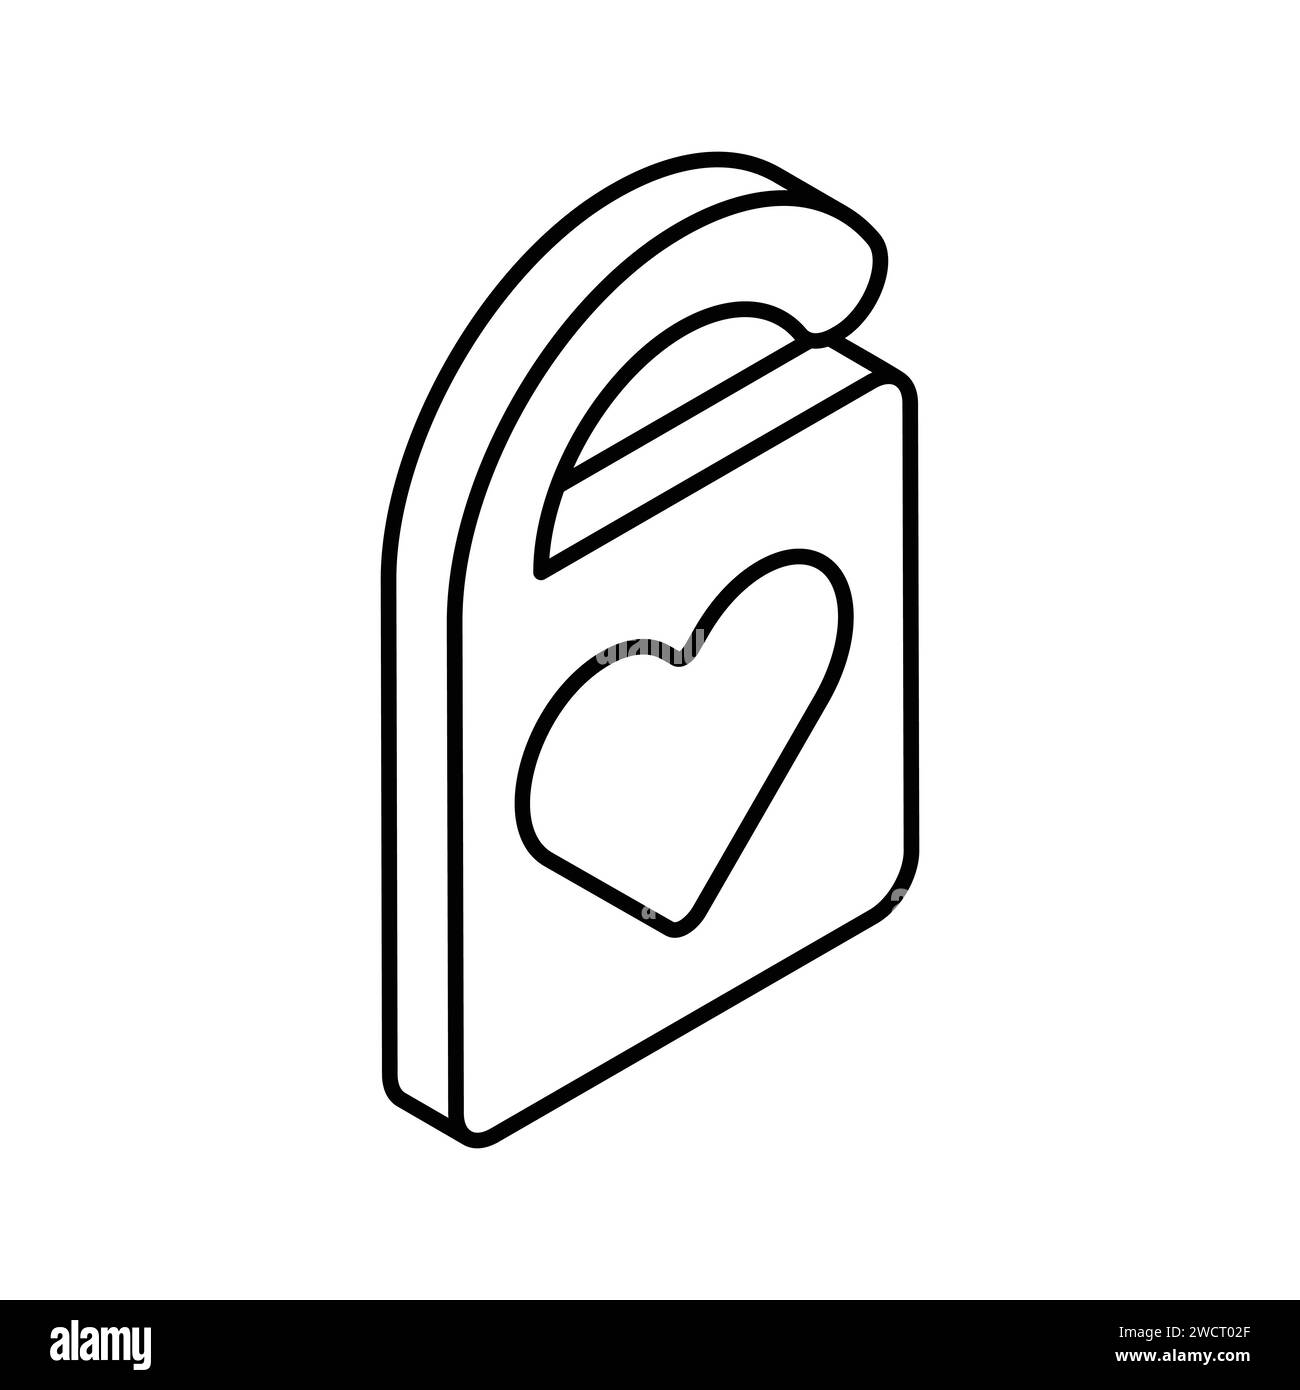 Icon of wedding hanger, heart symbol on door hanger, door hanging accessory Stock Vector